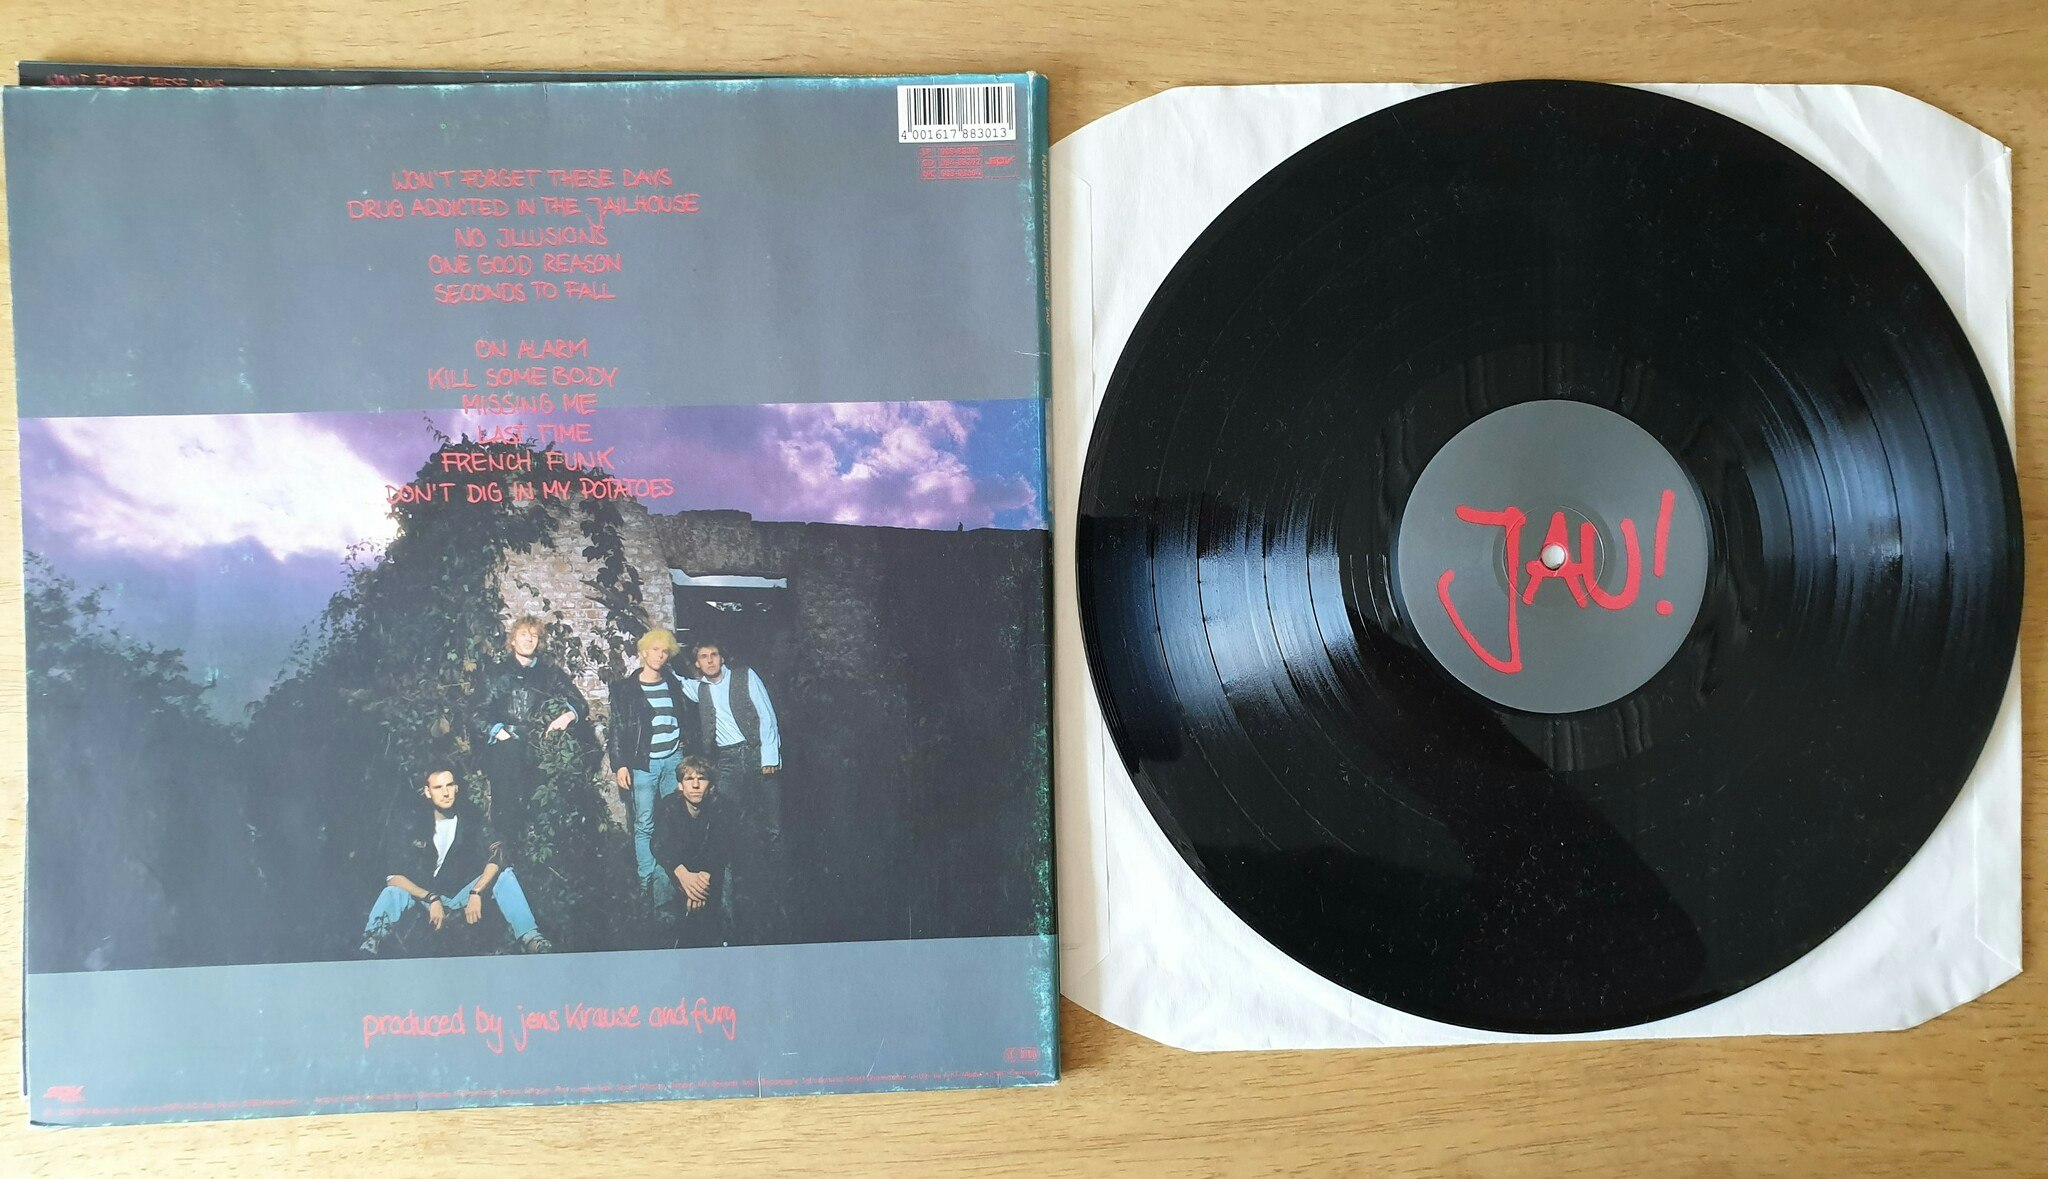 Fury in the slaughterhouse, Jau. Vinyl LP